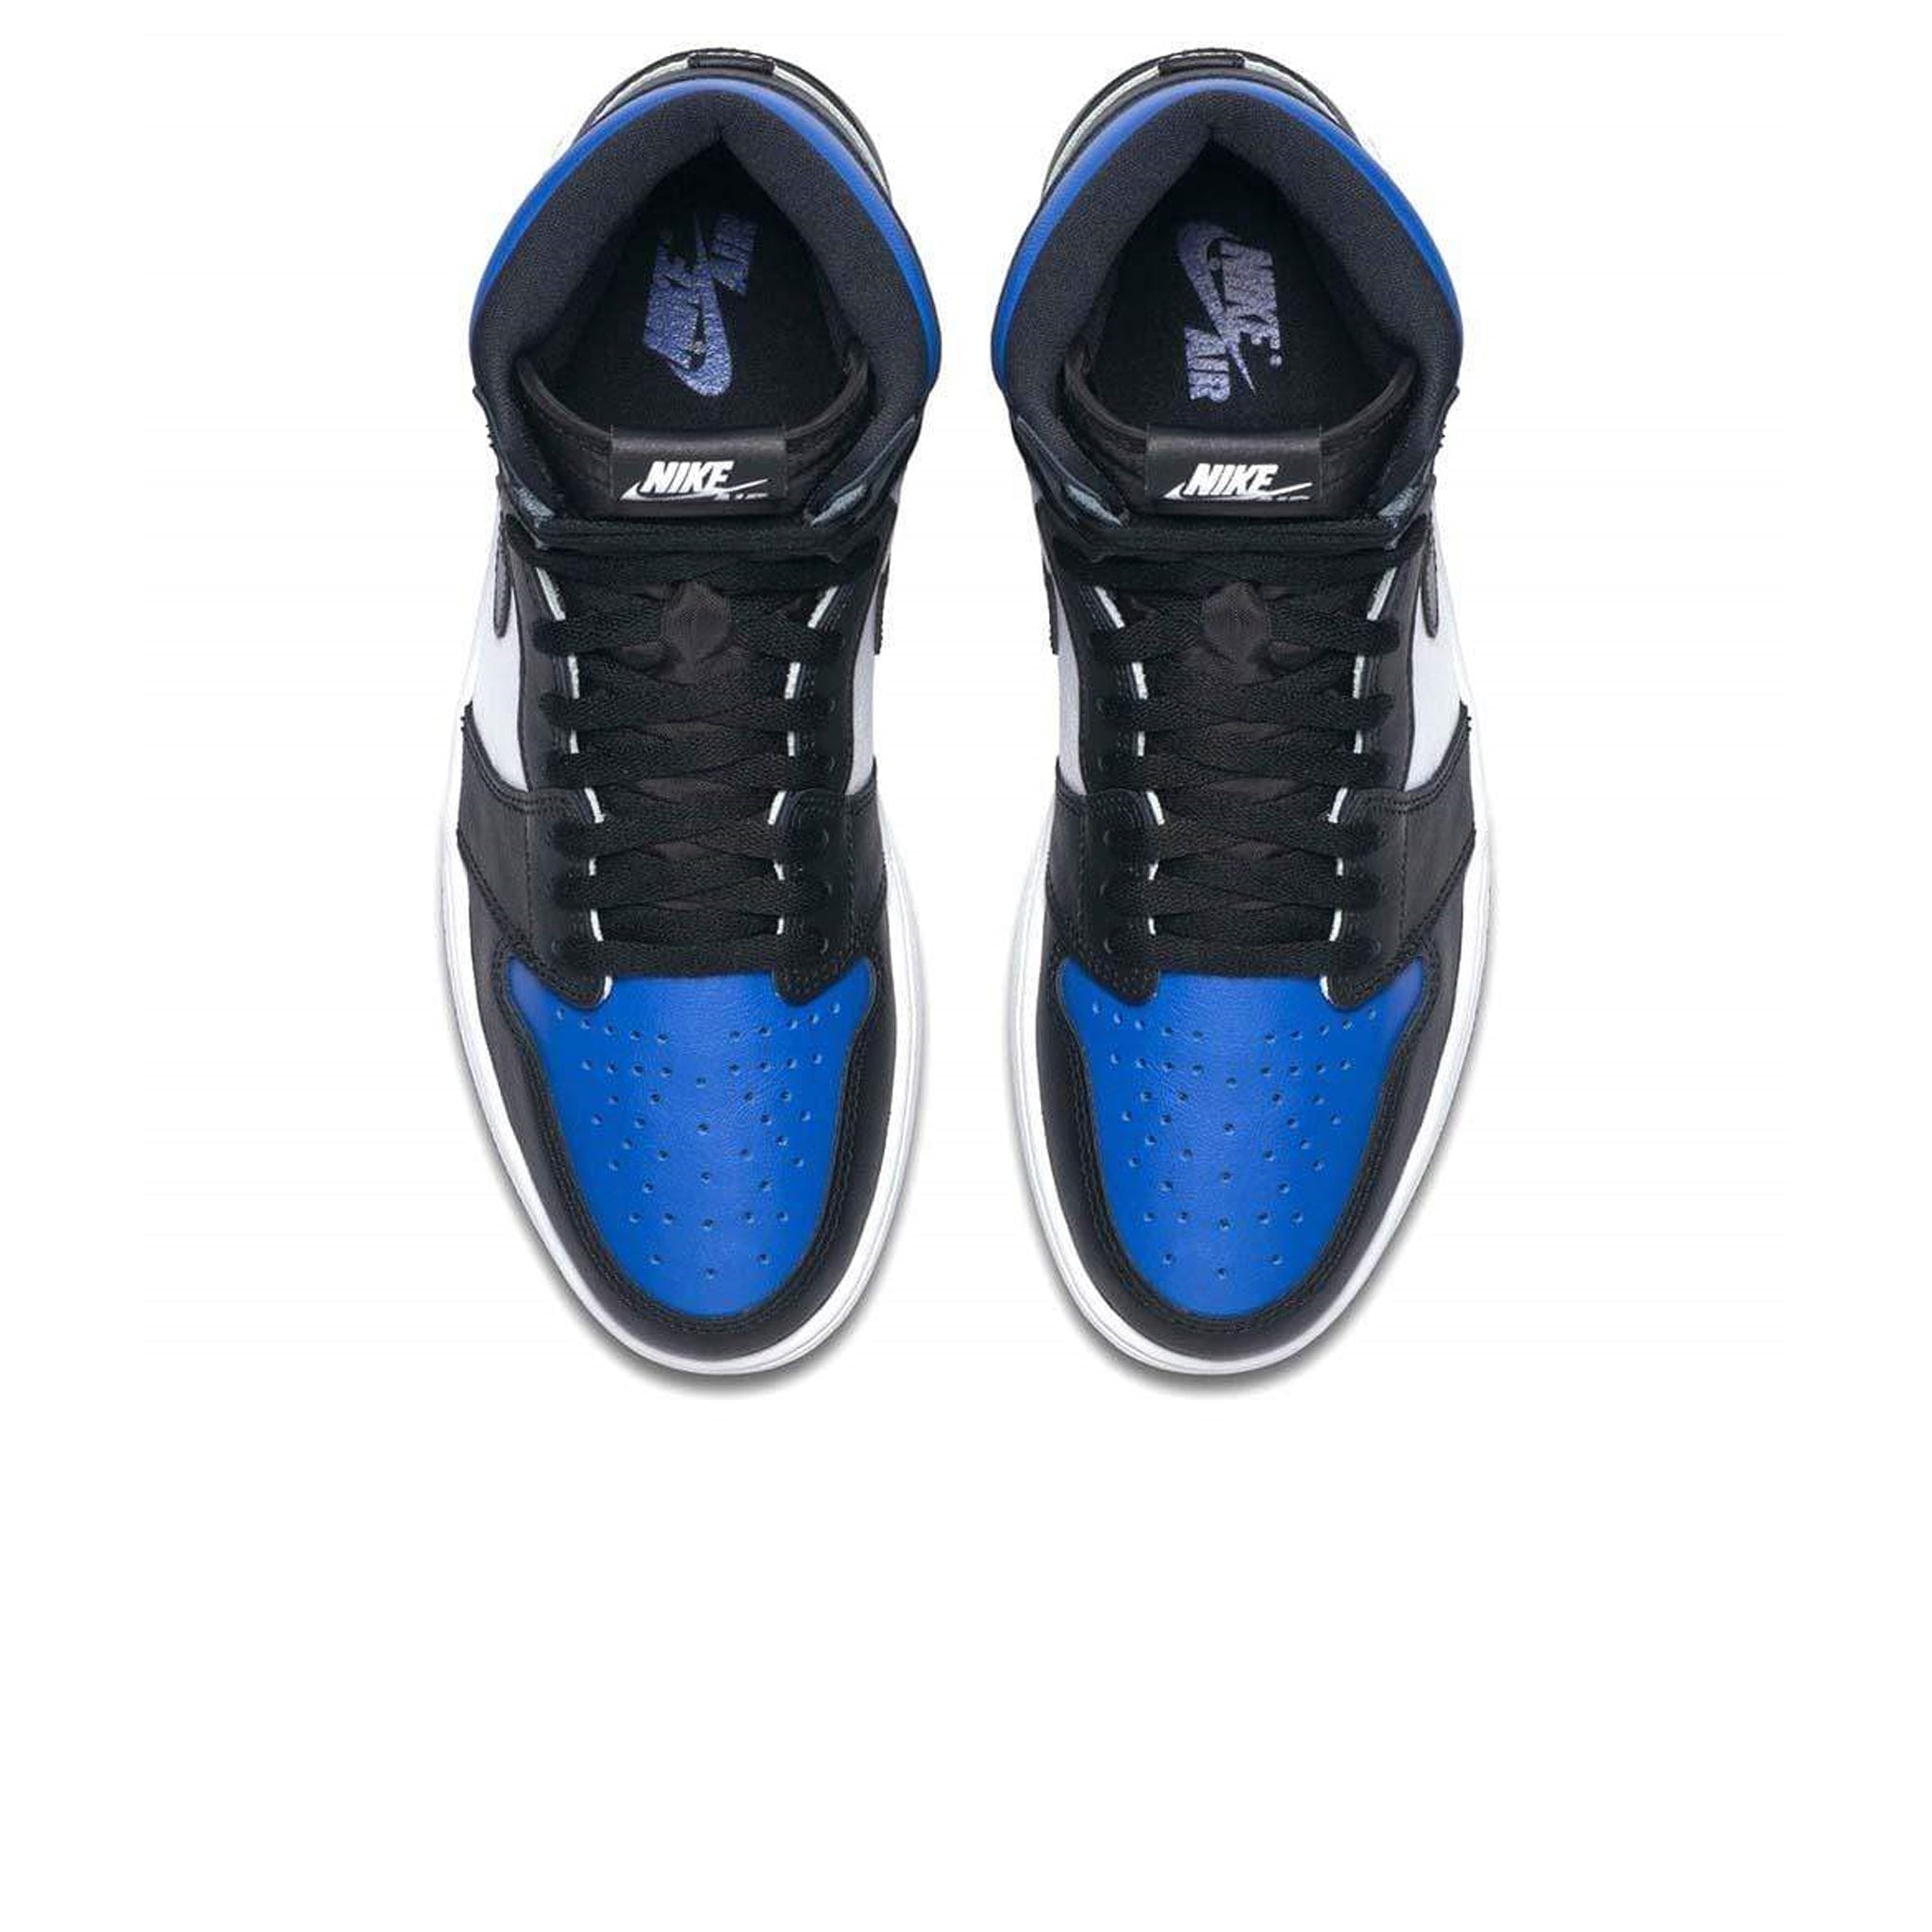 Top down view of Air Jordan 1 Royal Toe Sneaker 555088-041